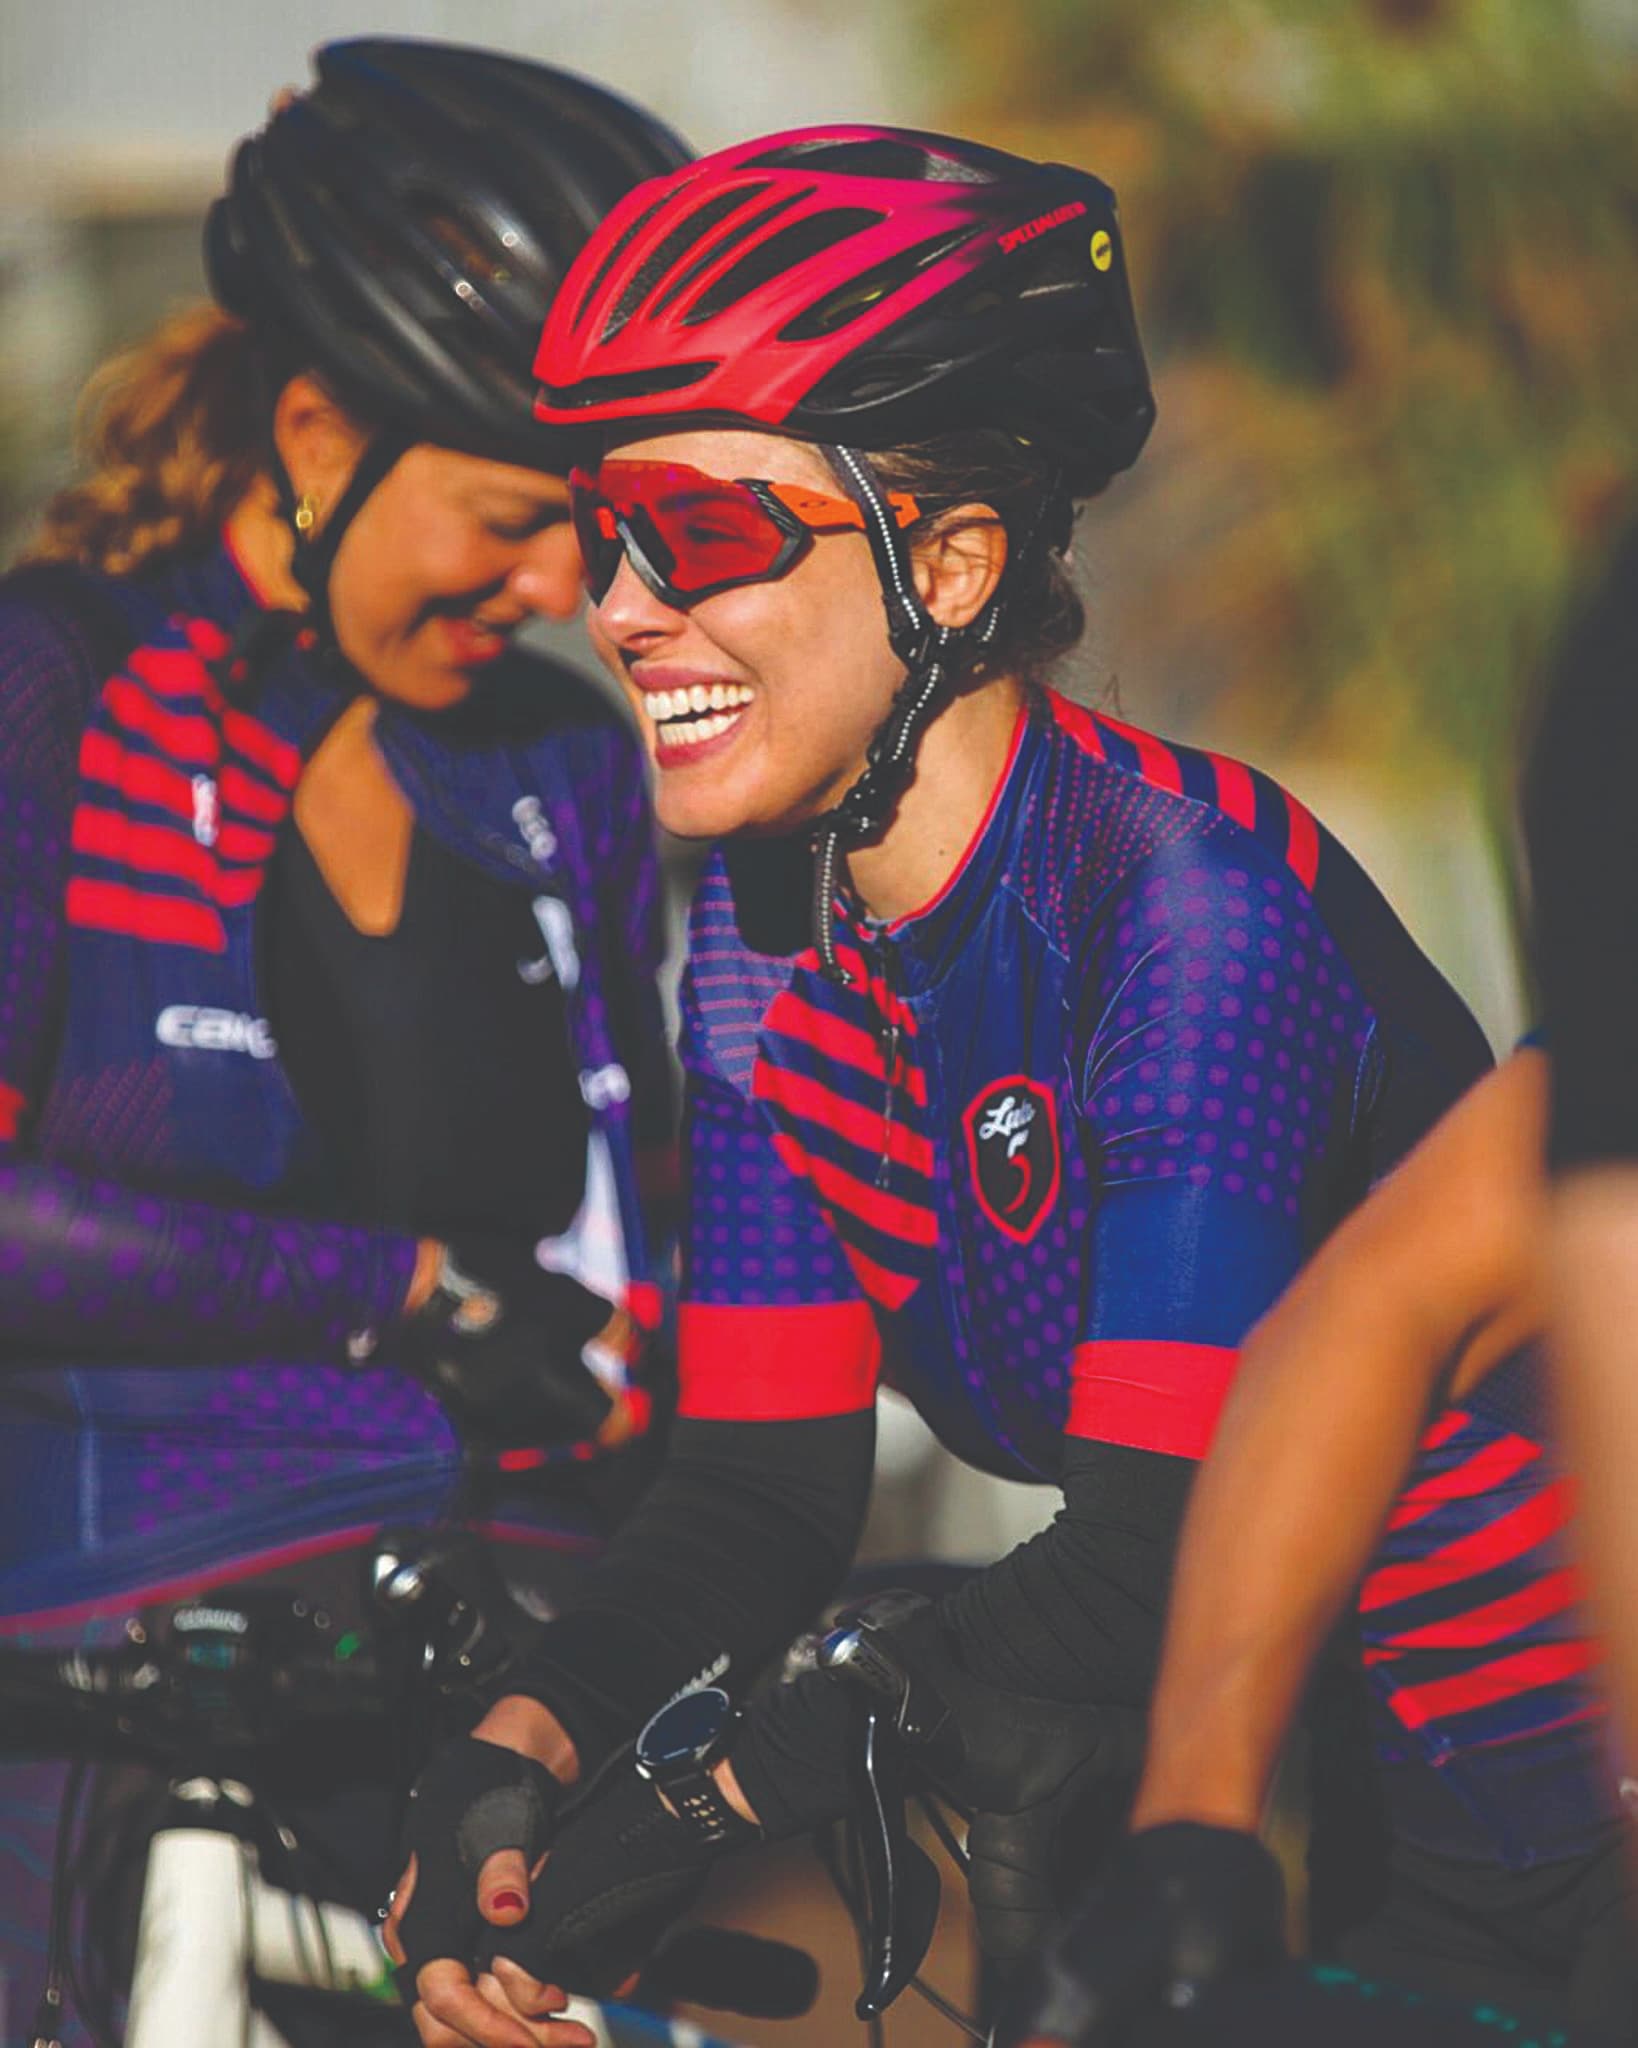 Mobilidade: A força feminina no ciclismo